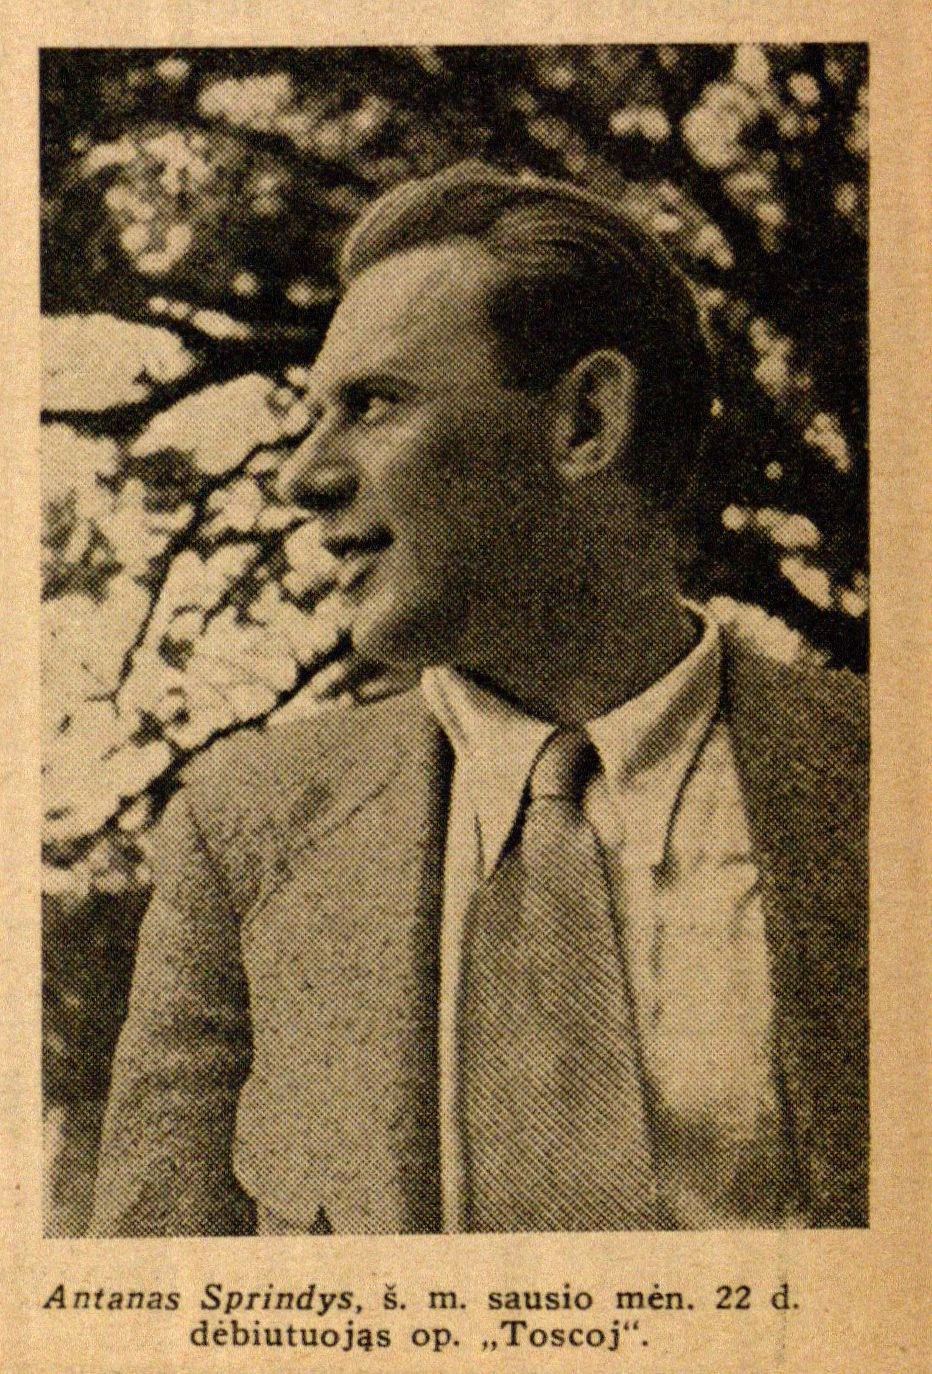 Antanas Sprindys, š. m. sausio mėn. 22 d. debiutuojąs op. „Toscoj“ // Meno dienos. – 1936, Nr. 19, p. 5.